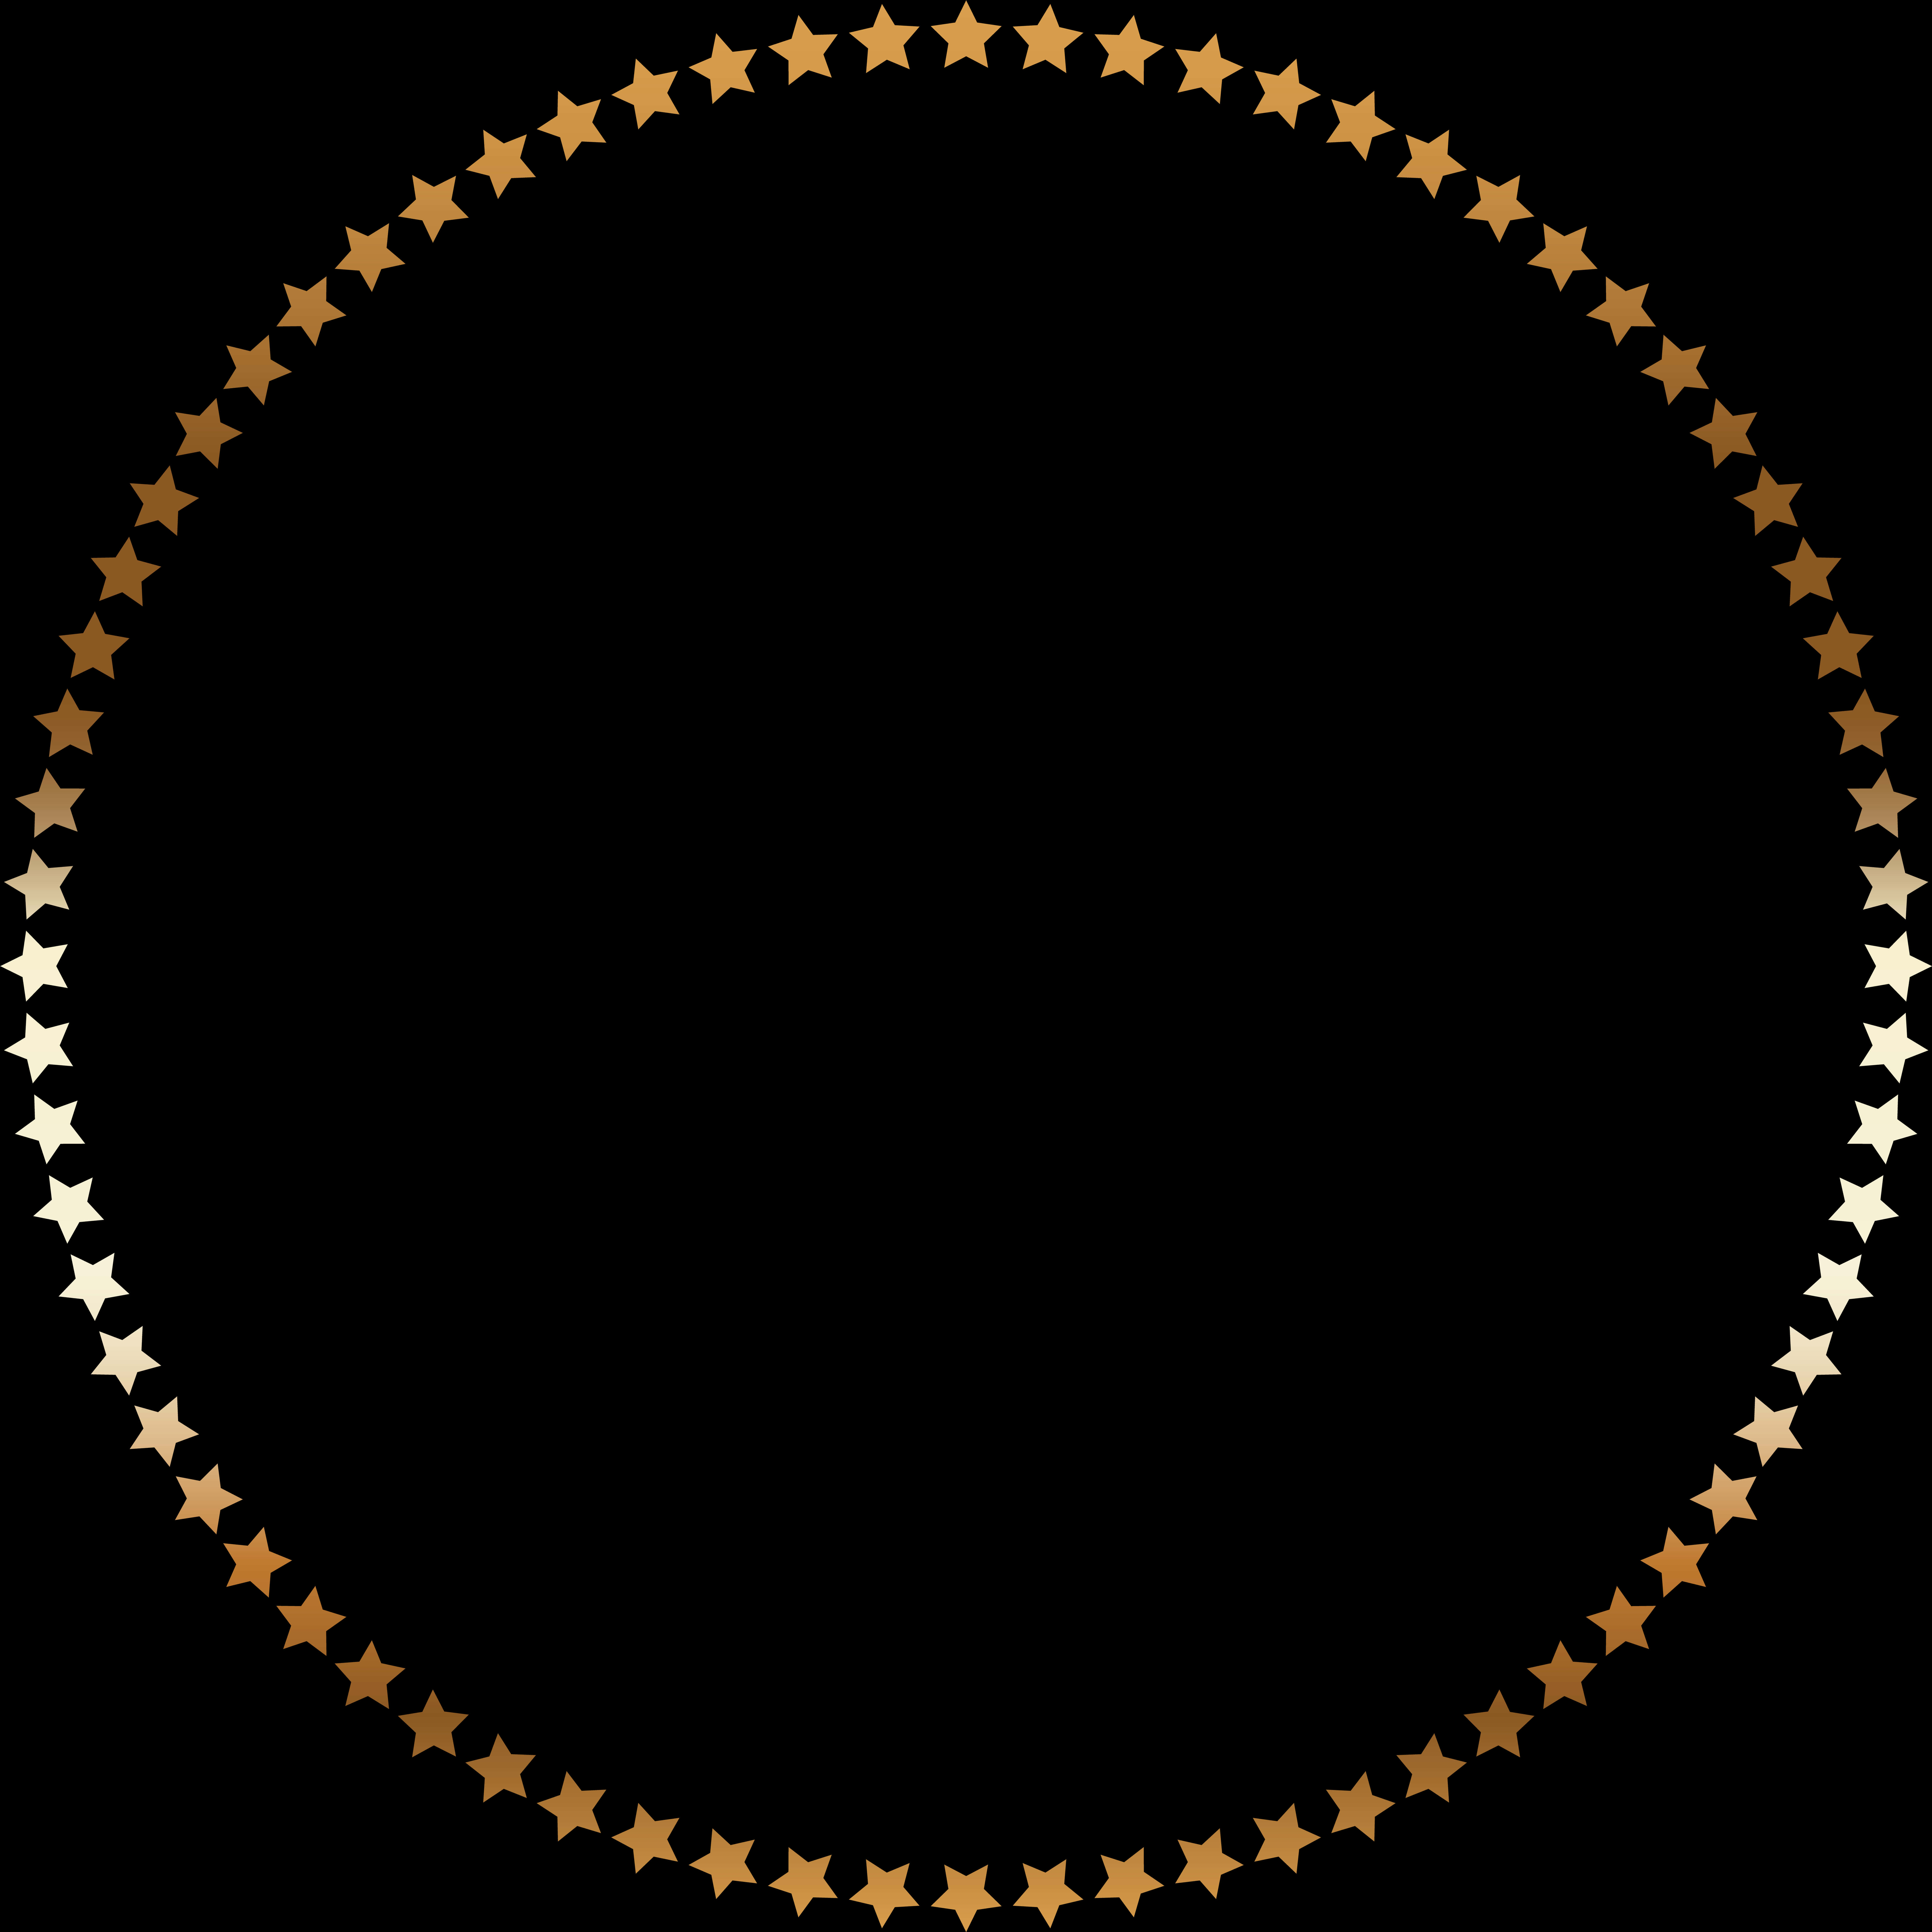 A Circle Of Gold Stars